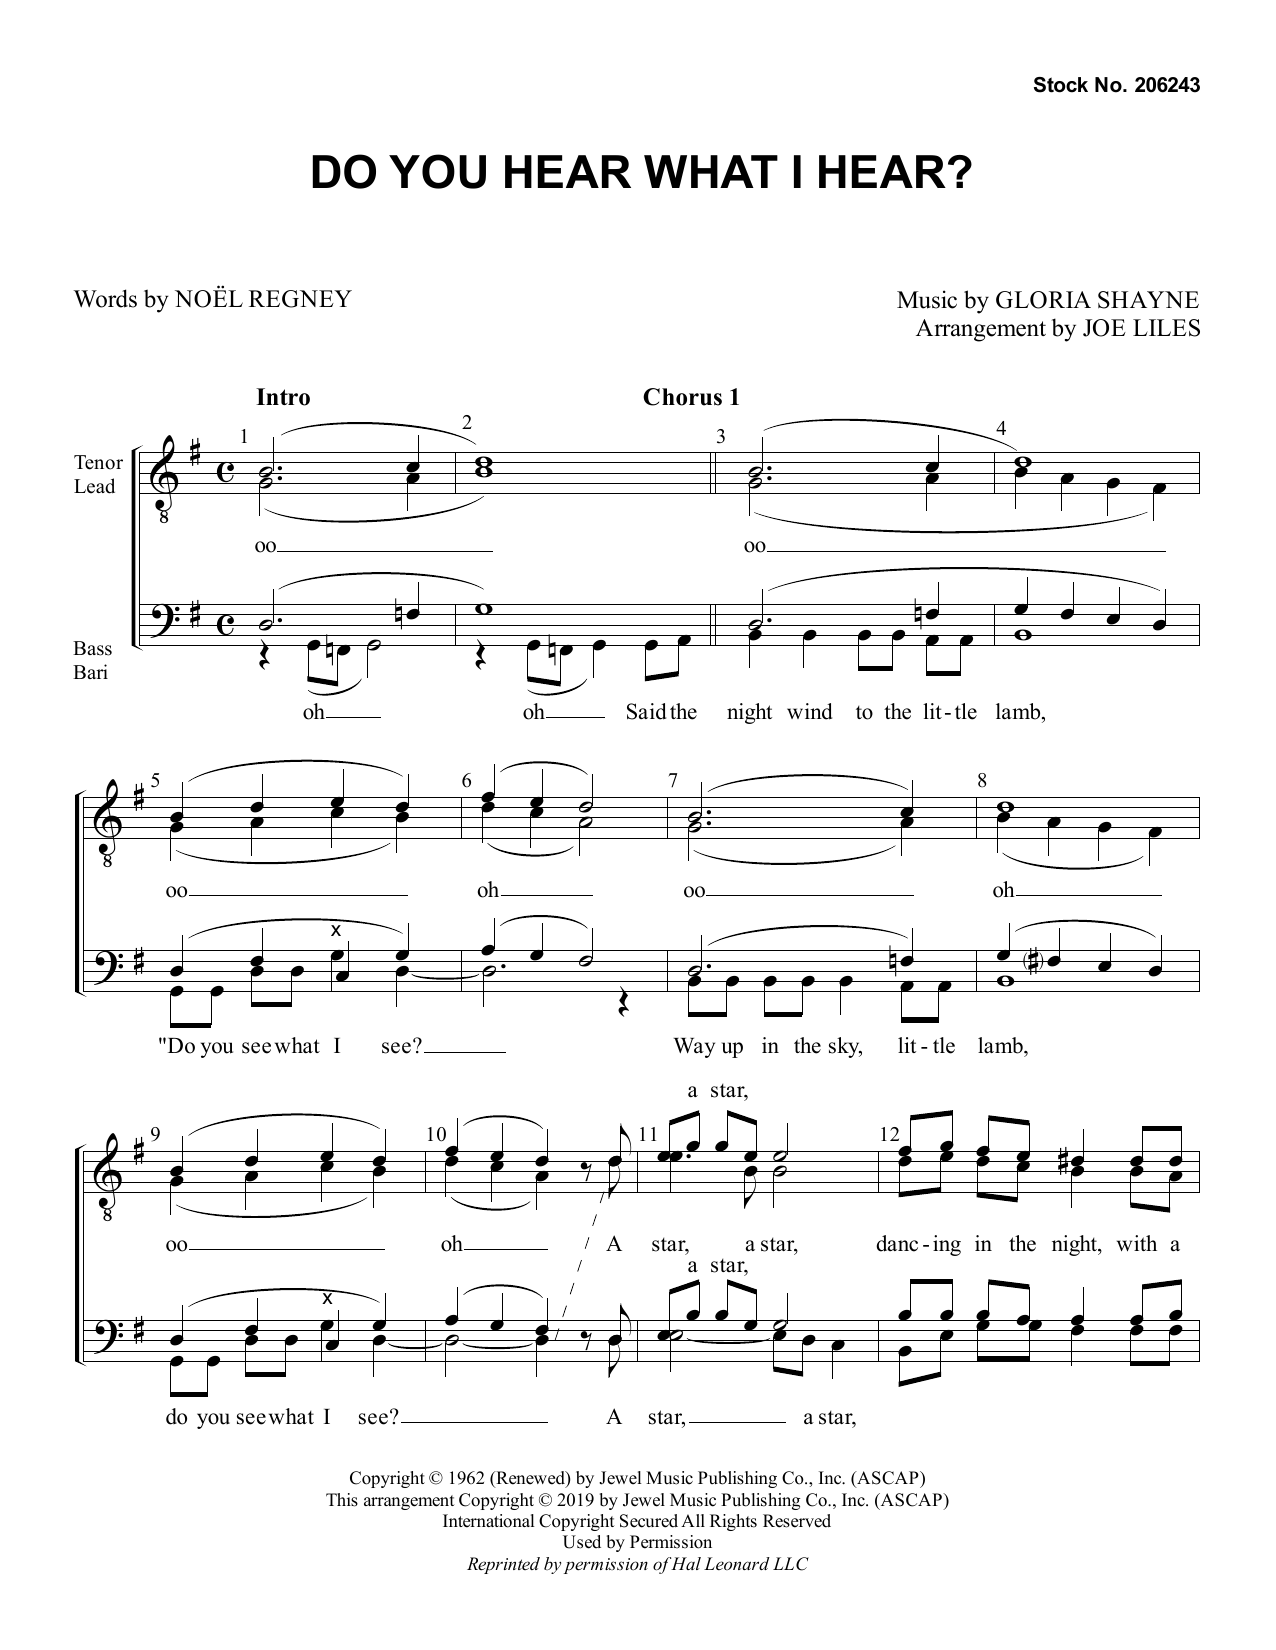 Gloria Shayne Do You Hear What I Hear? (arr. Joe Liles) Sheet Music Notes & Chords for TTBB Choir - Download or Print PDF